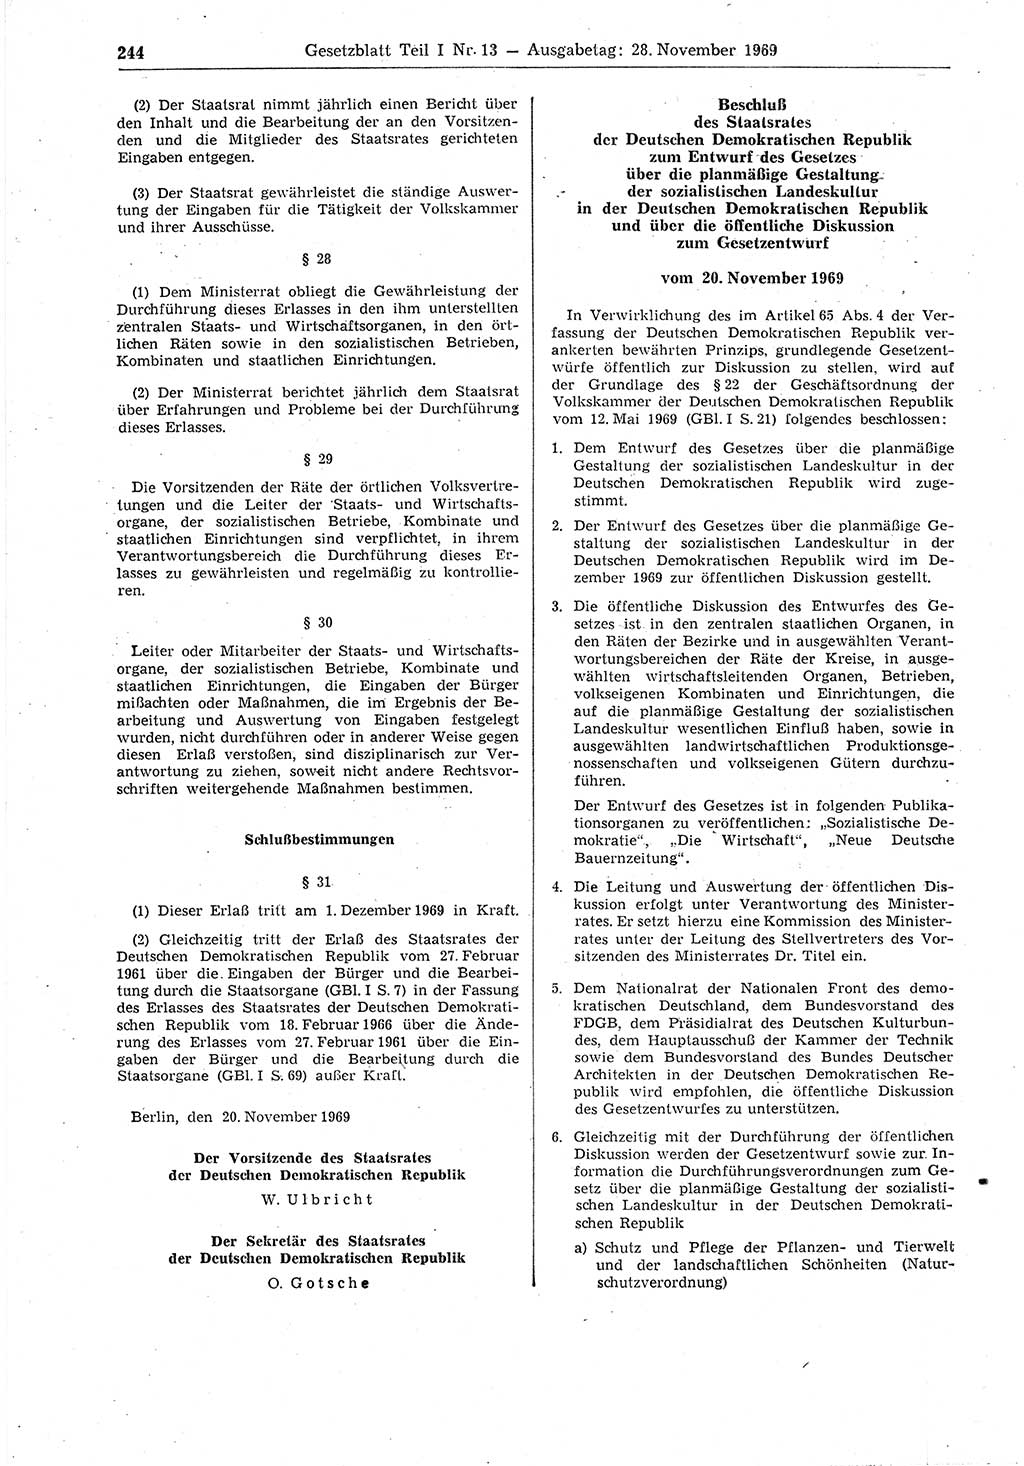 Gesetzblatt (GBl.) der Deutschen Demokratischen Republik (DDR) Teil Ⅰ 1969, Seite 244 (GBl. DDR Ⅰ 1969, S. 244)